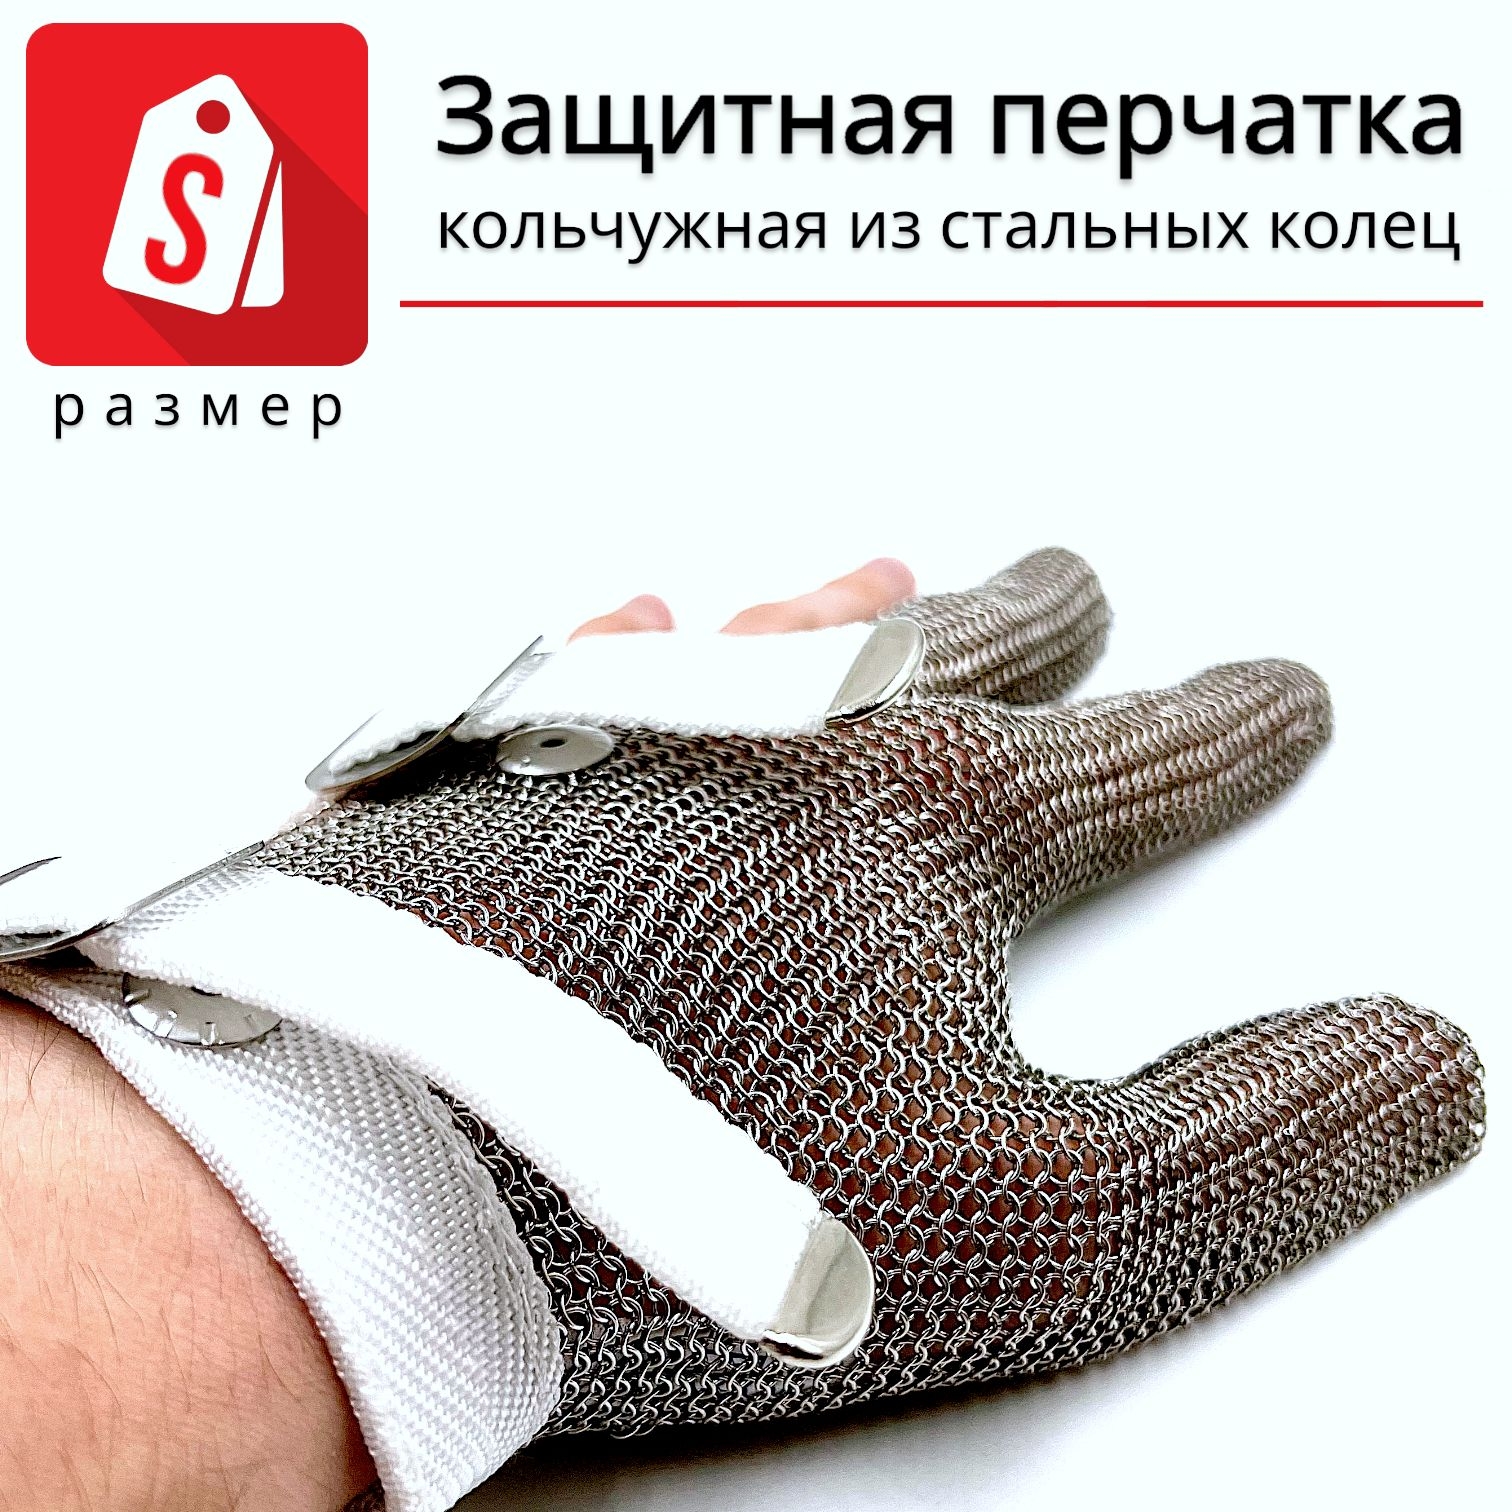 Трехпалая кольчужная перчатка (размер S) lucky reptile перчатка защитная кожаная на левую руку protection glove